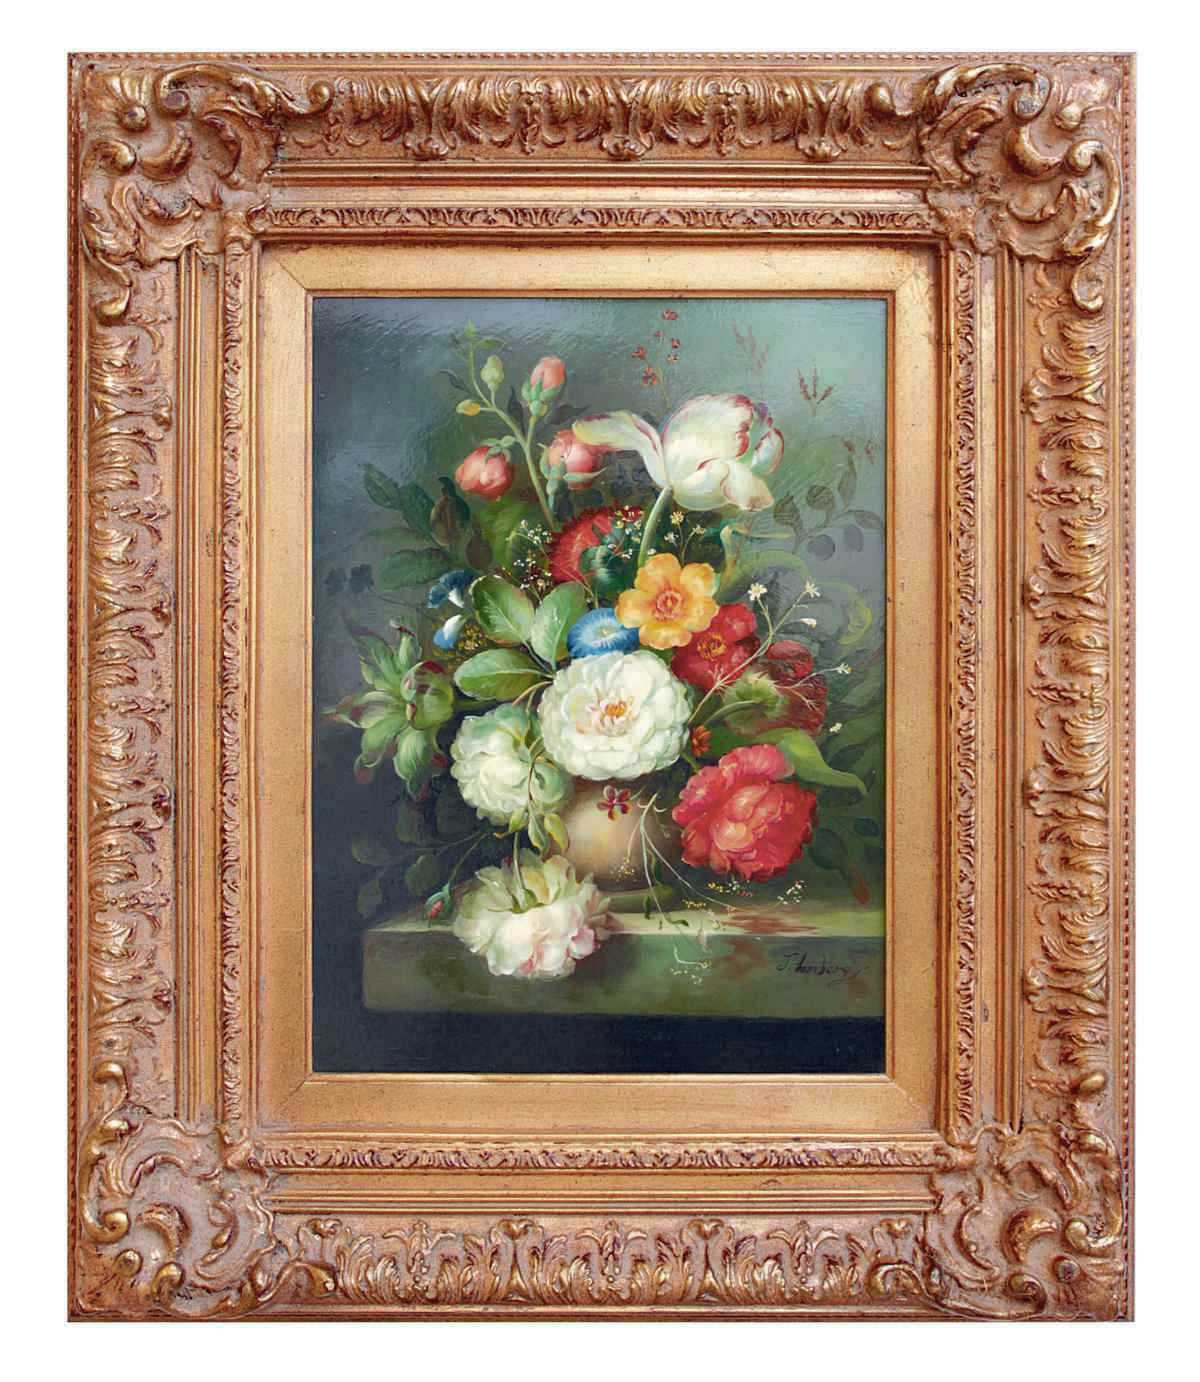 Ölbild von Lomberg, zeigt florales Stilleben, Frontalansicht.